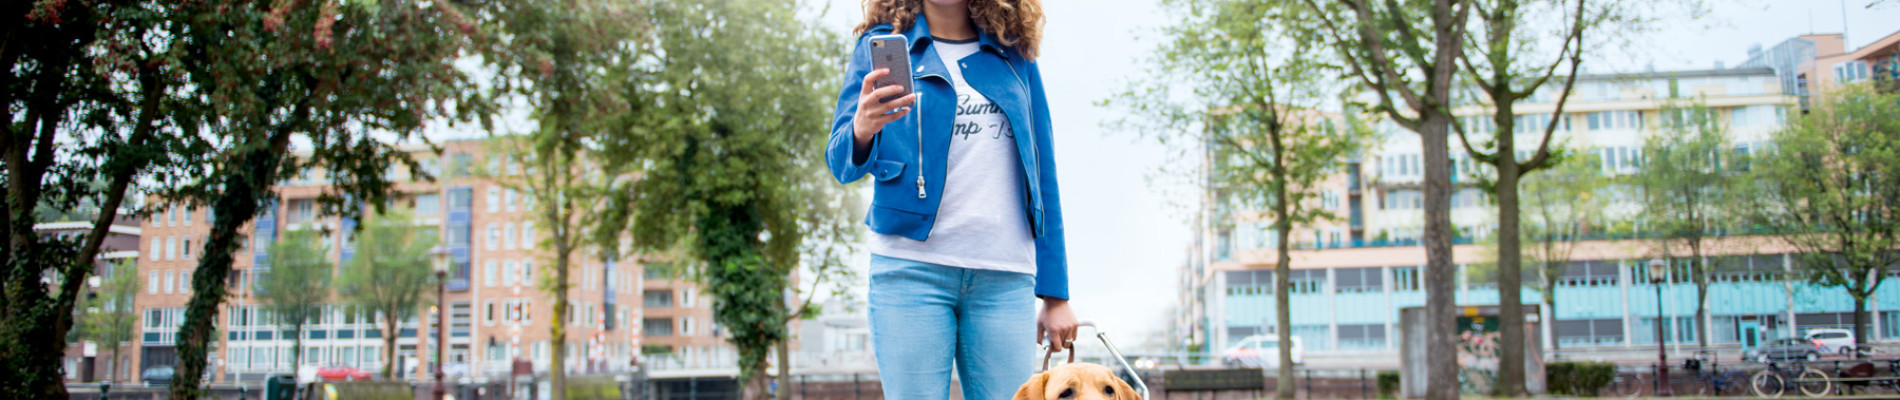 Beeld uit de campagnevideo Bennie Blind waarbij een meisje in de ene hand een mobiel vasthoudt en in de andere haar 'afgeleidehond' met blauw tuig